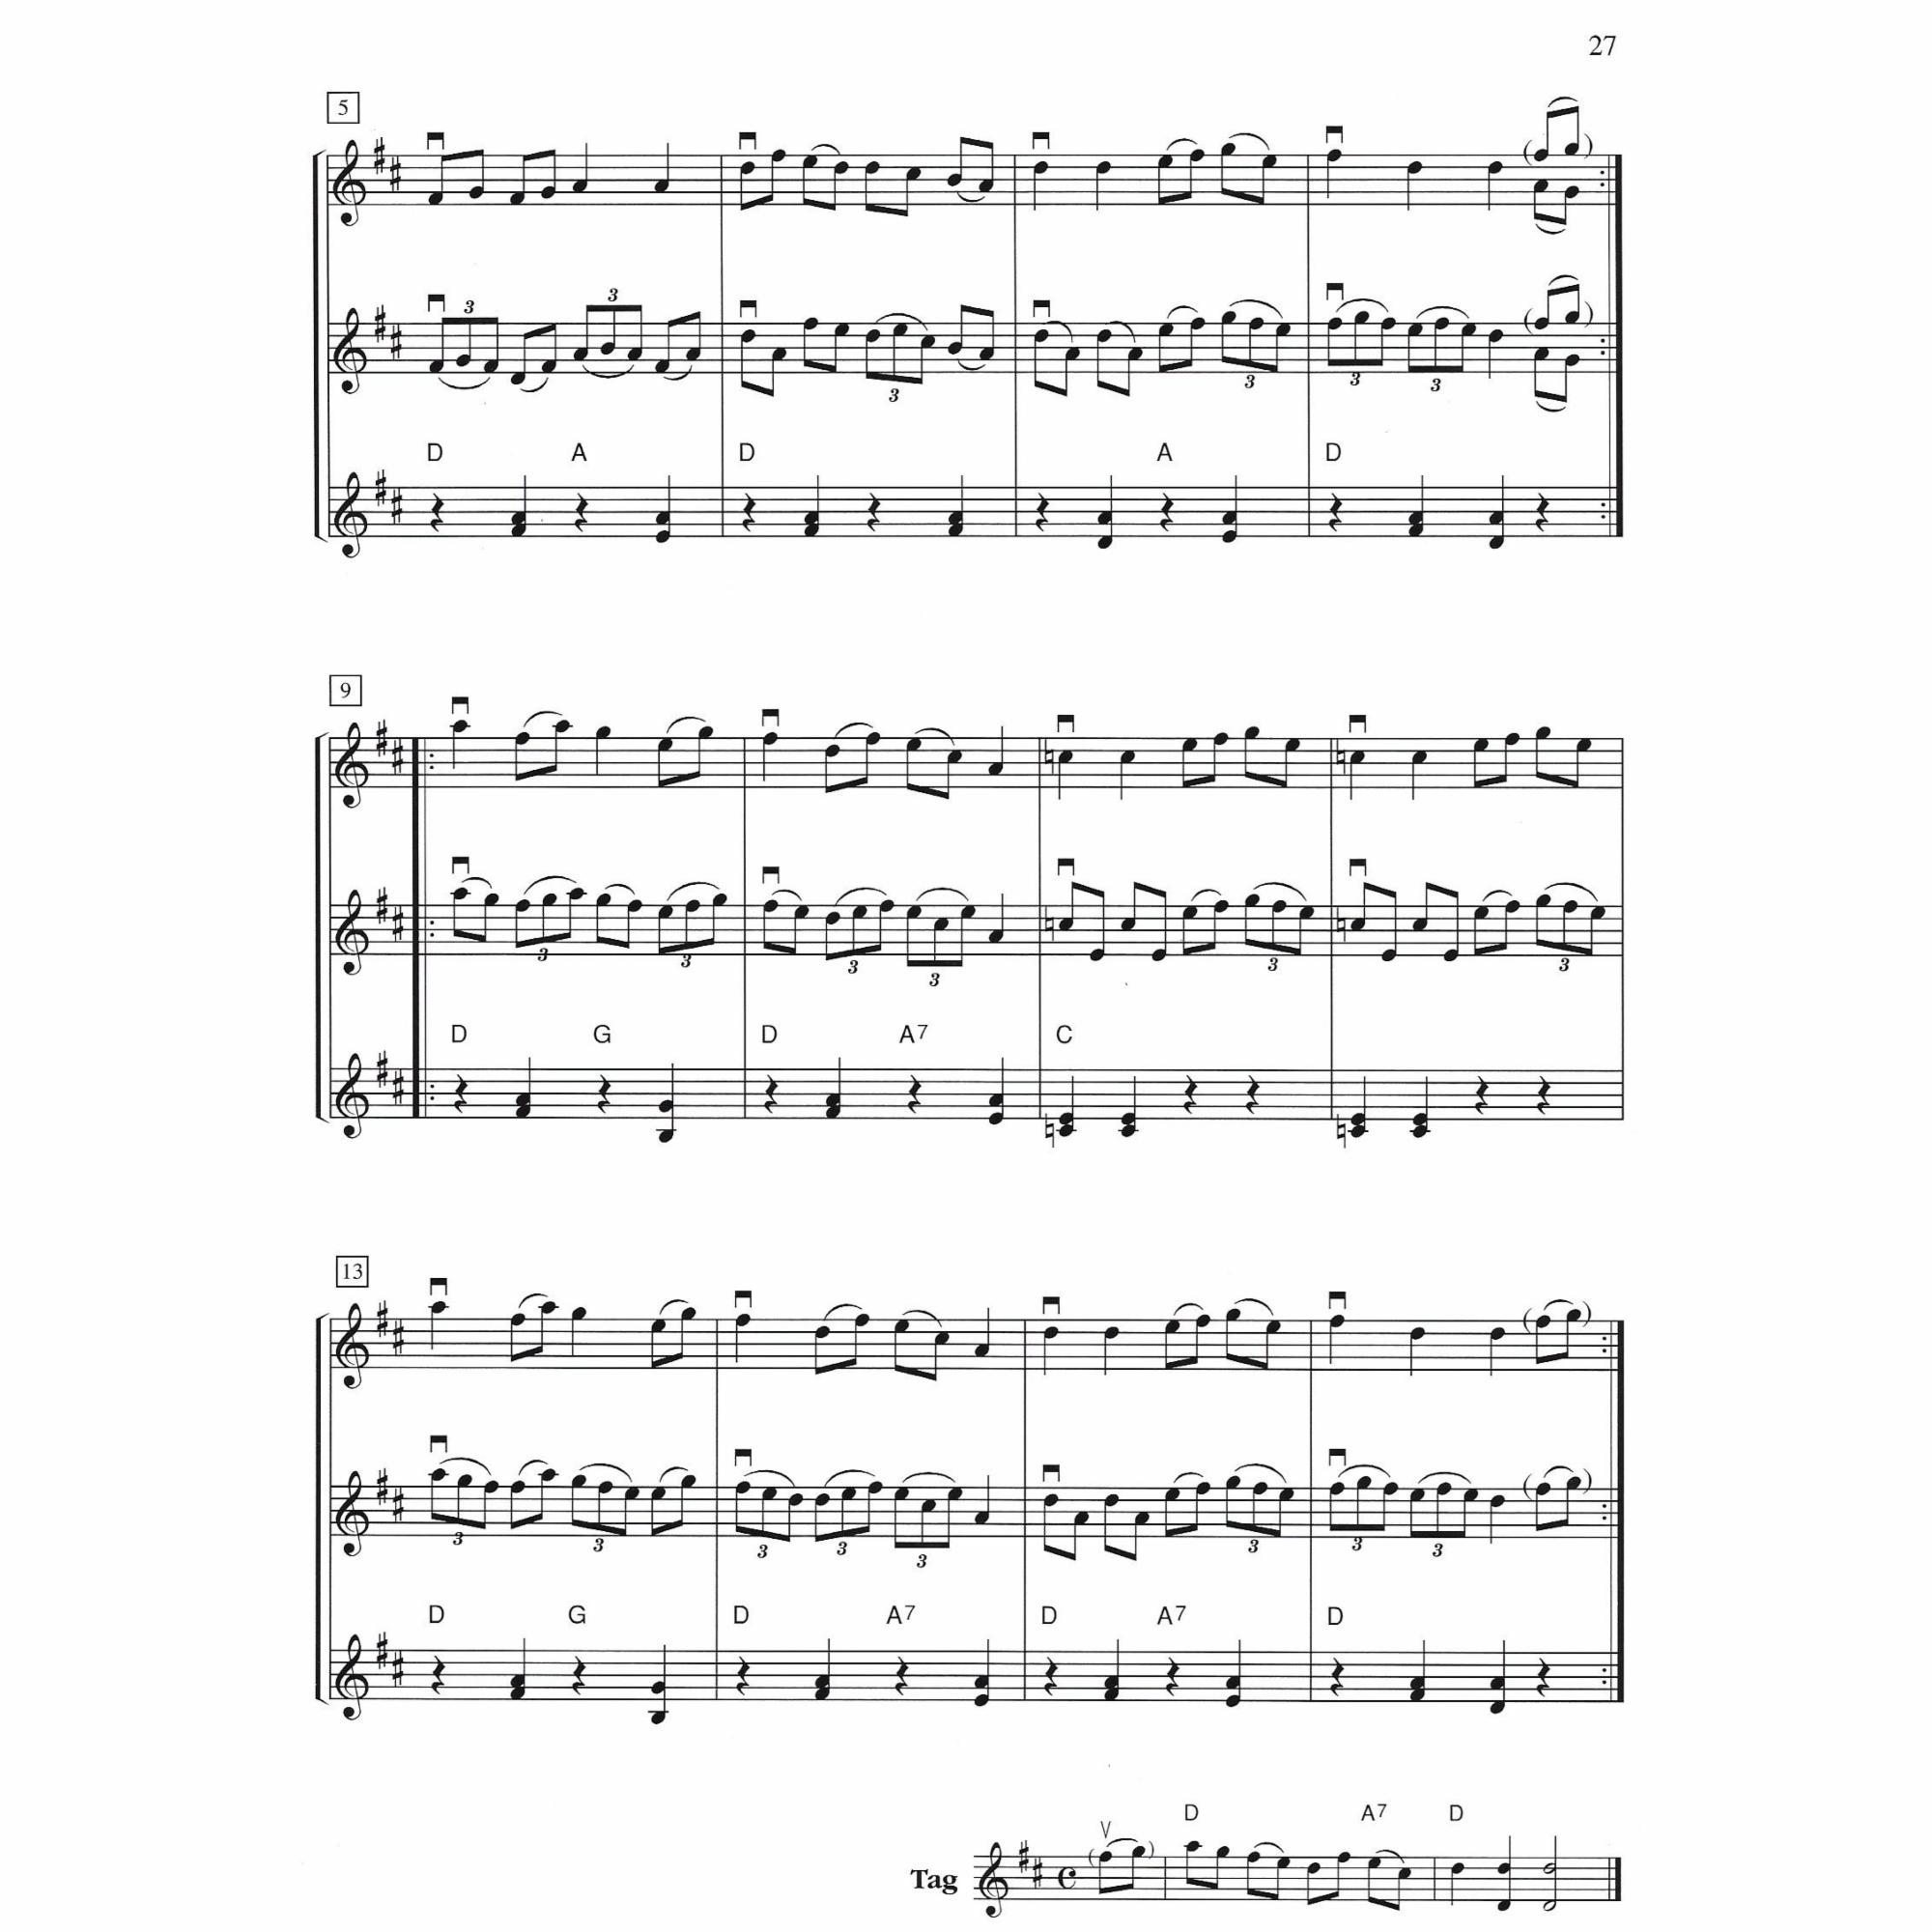 Sample: Violin (Pg. 27)